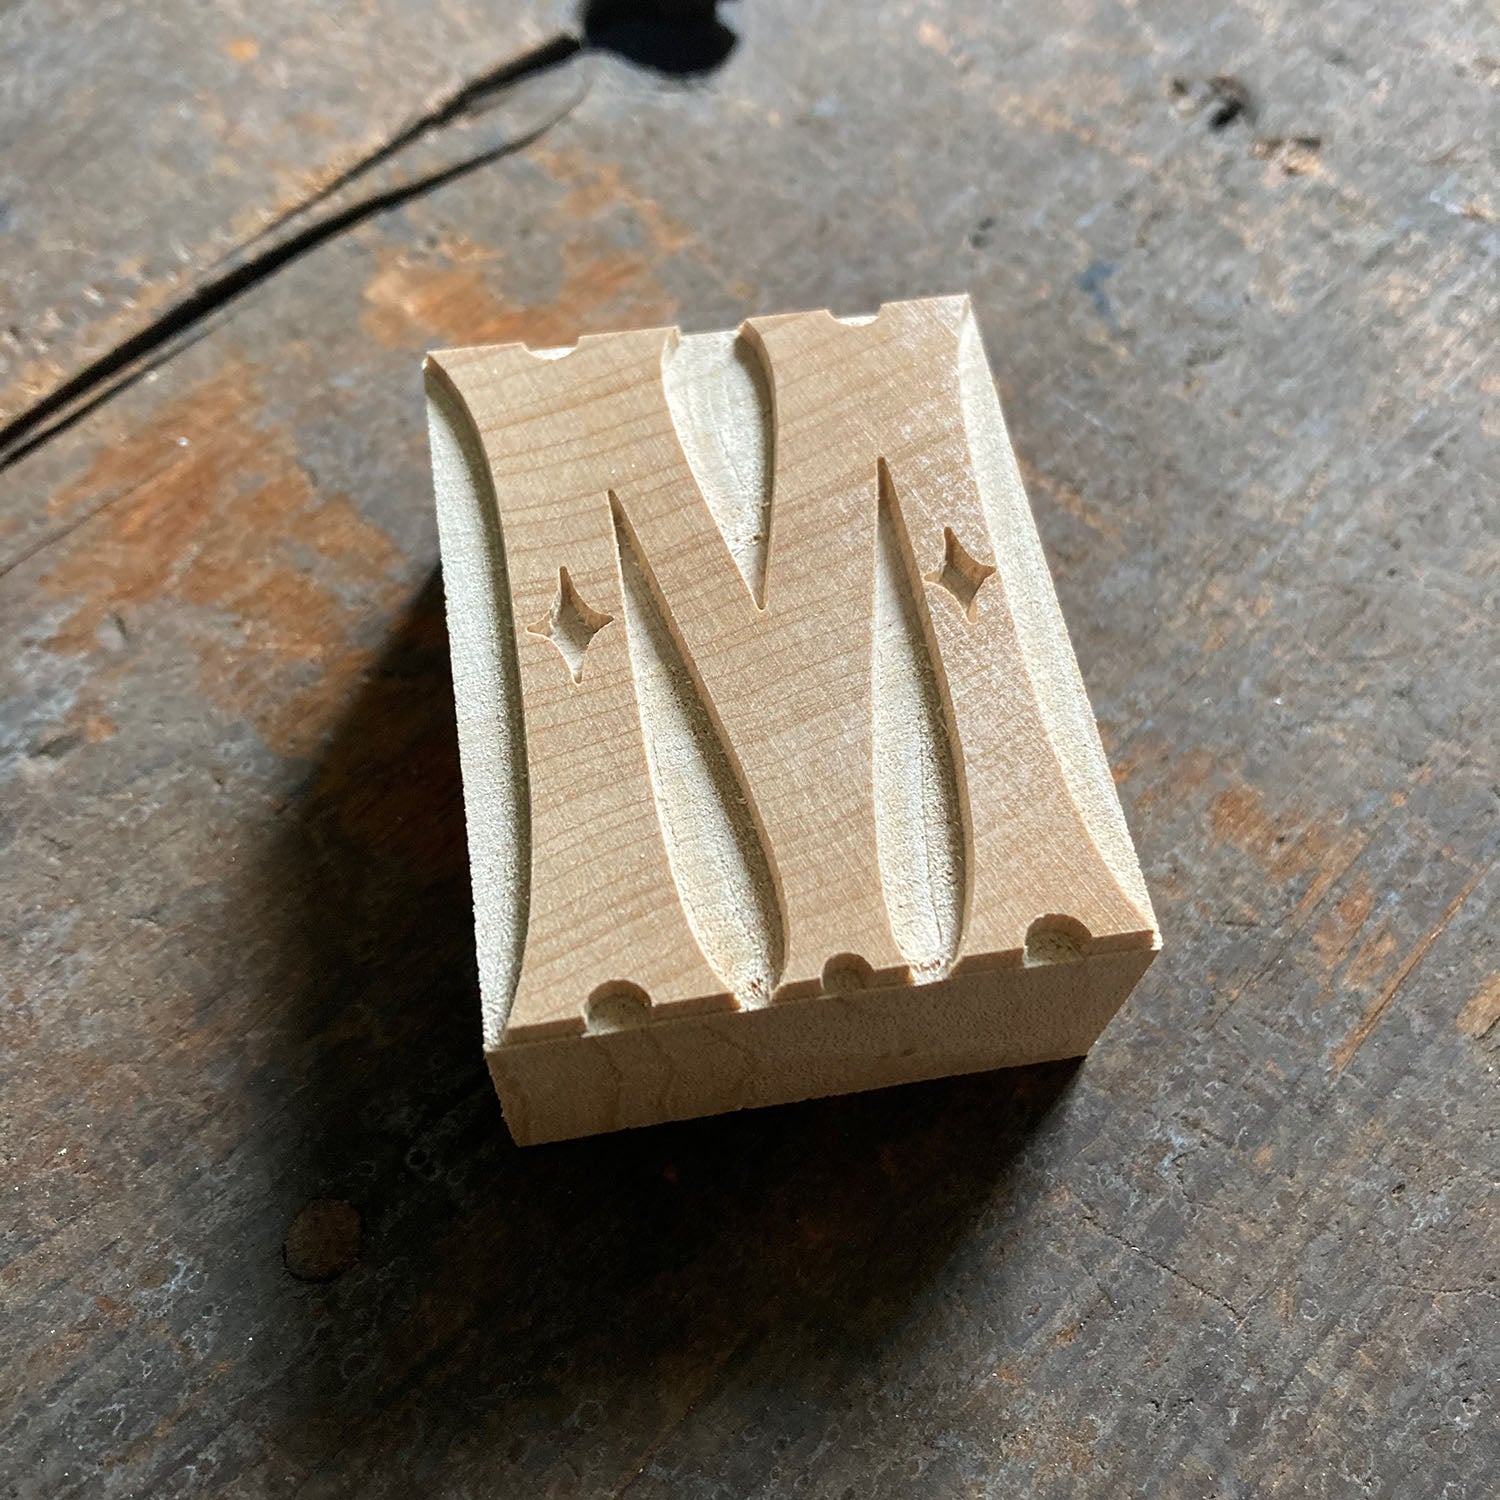 ‘Winkworth' Letterpress woodtype typeface